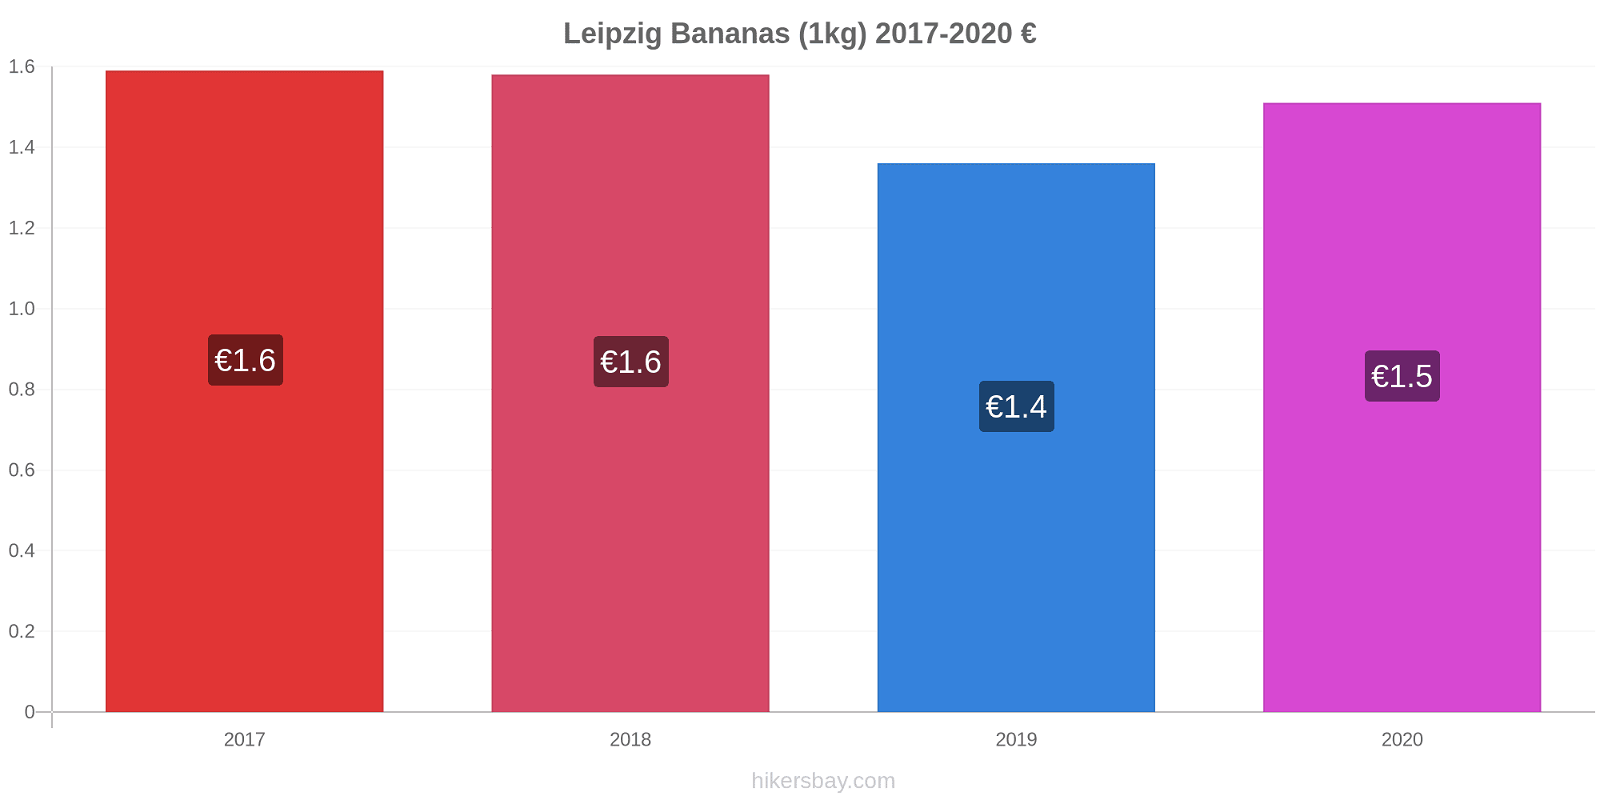 Leipzig variação de preço Banana (1kg) hikersbay.com